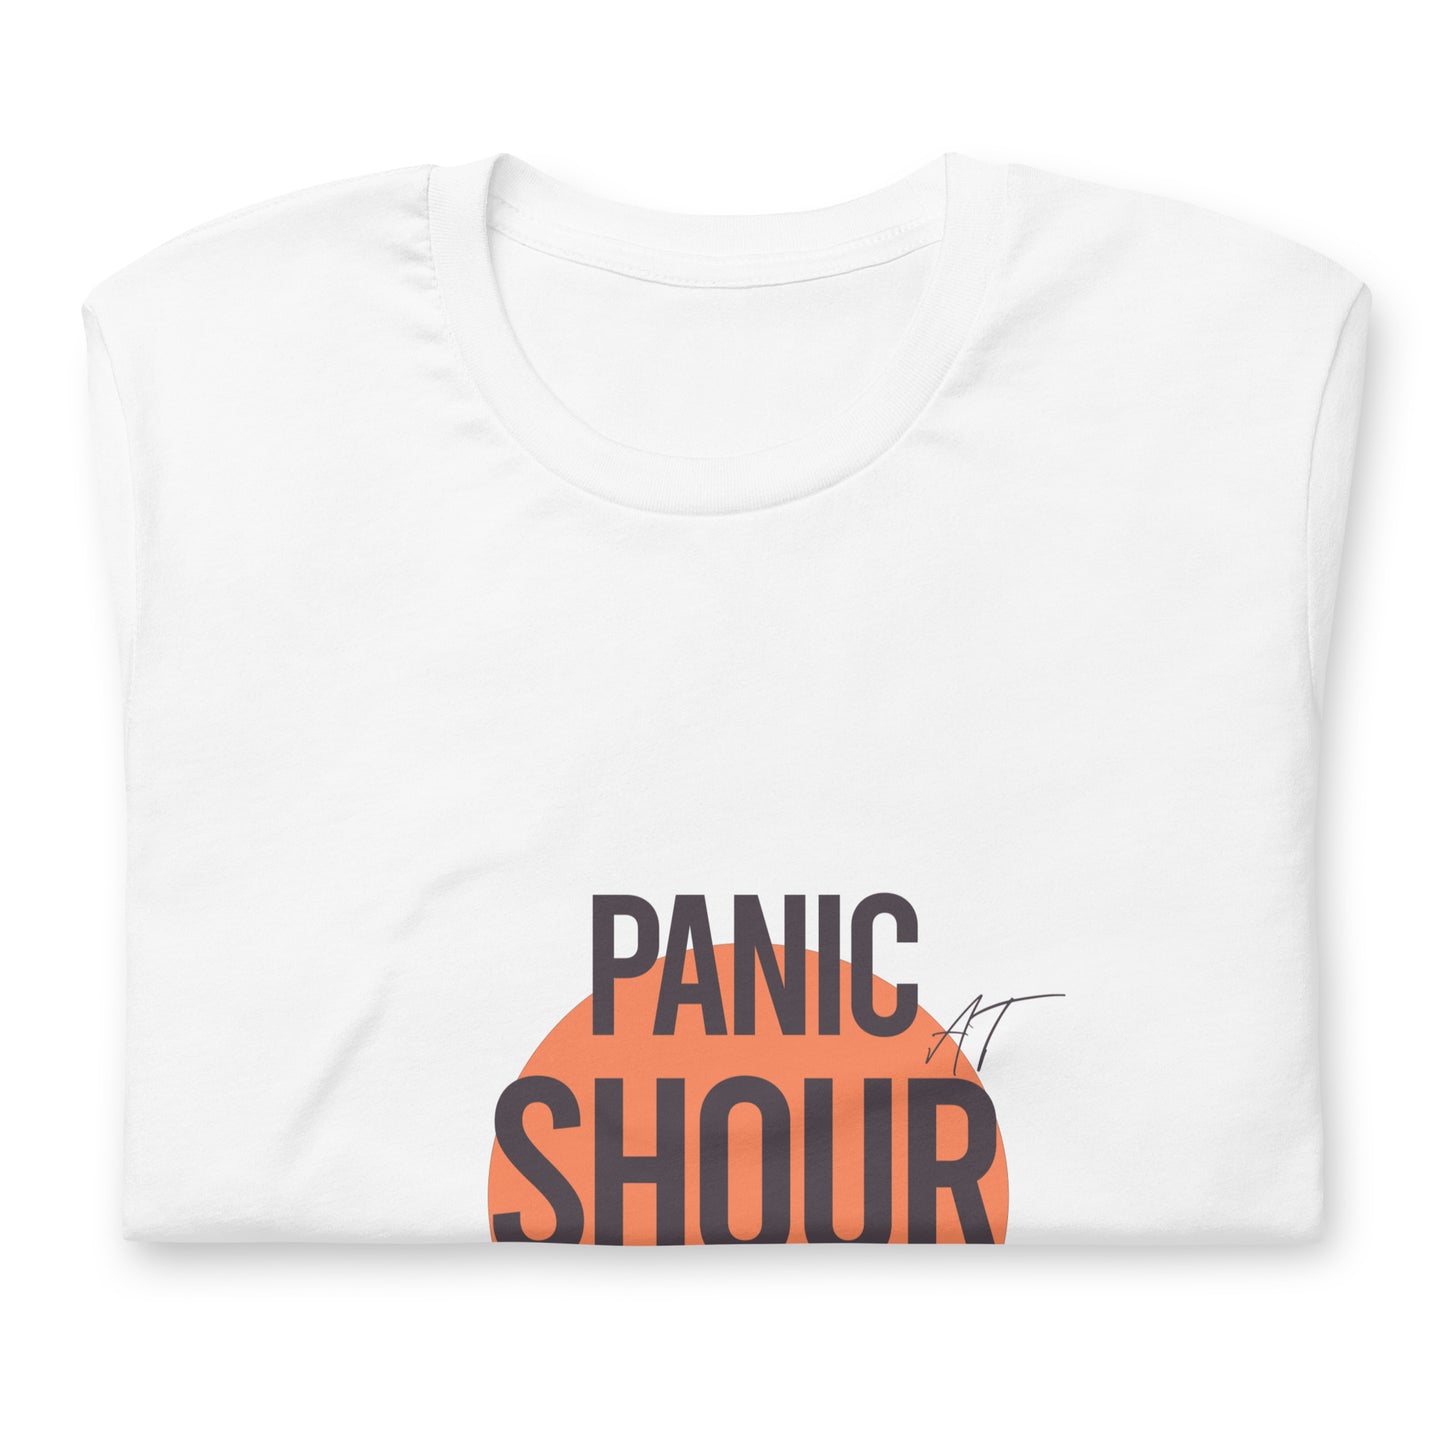 Panic at shour t-shirt